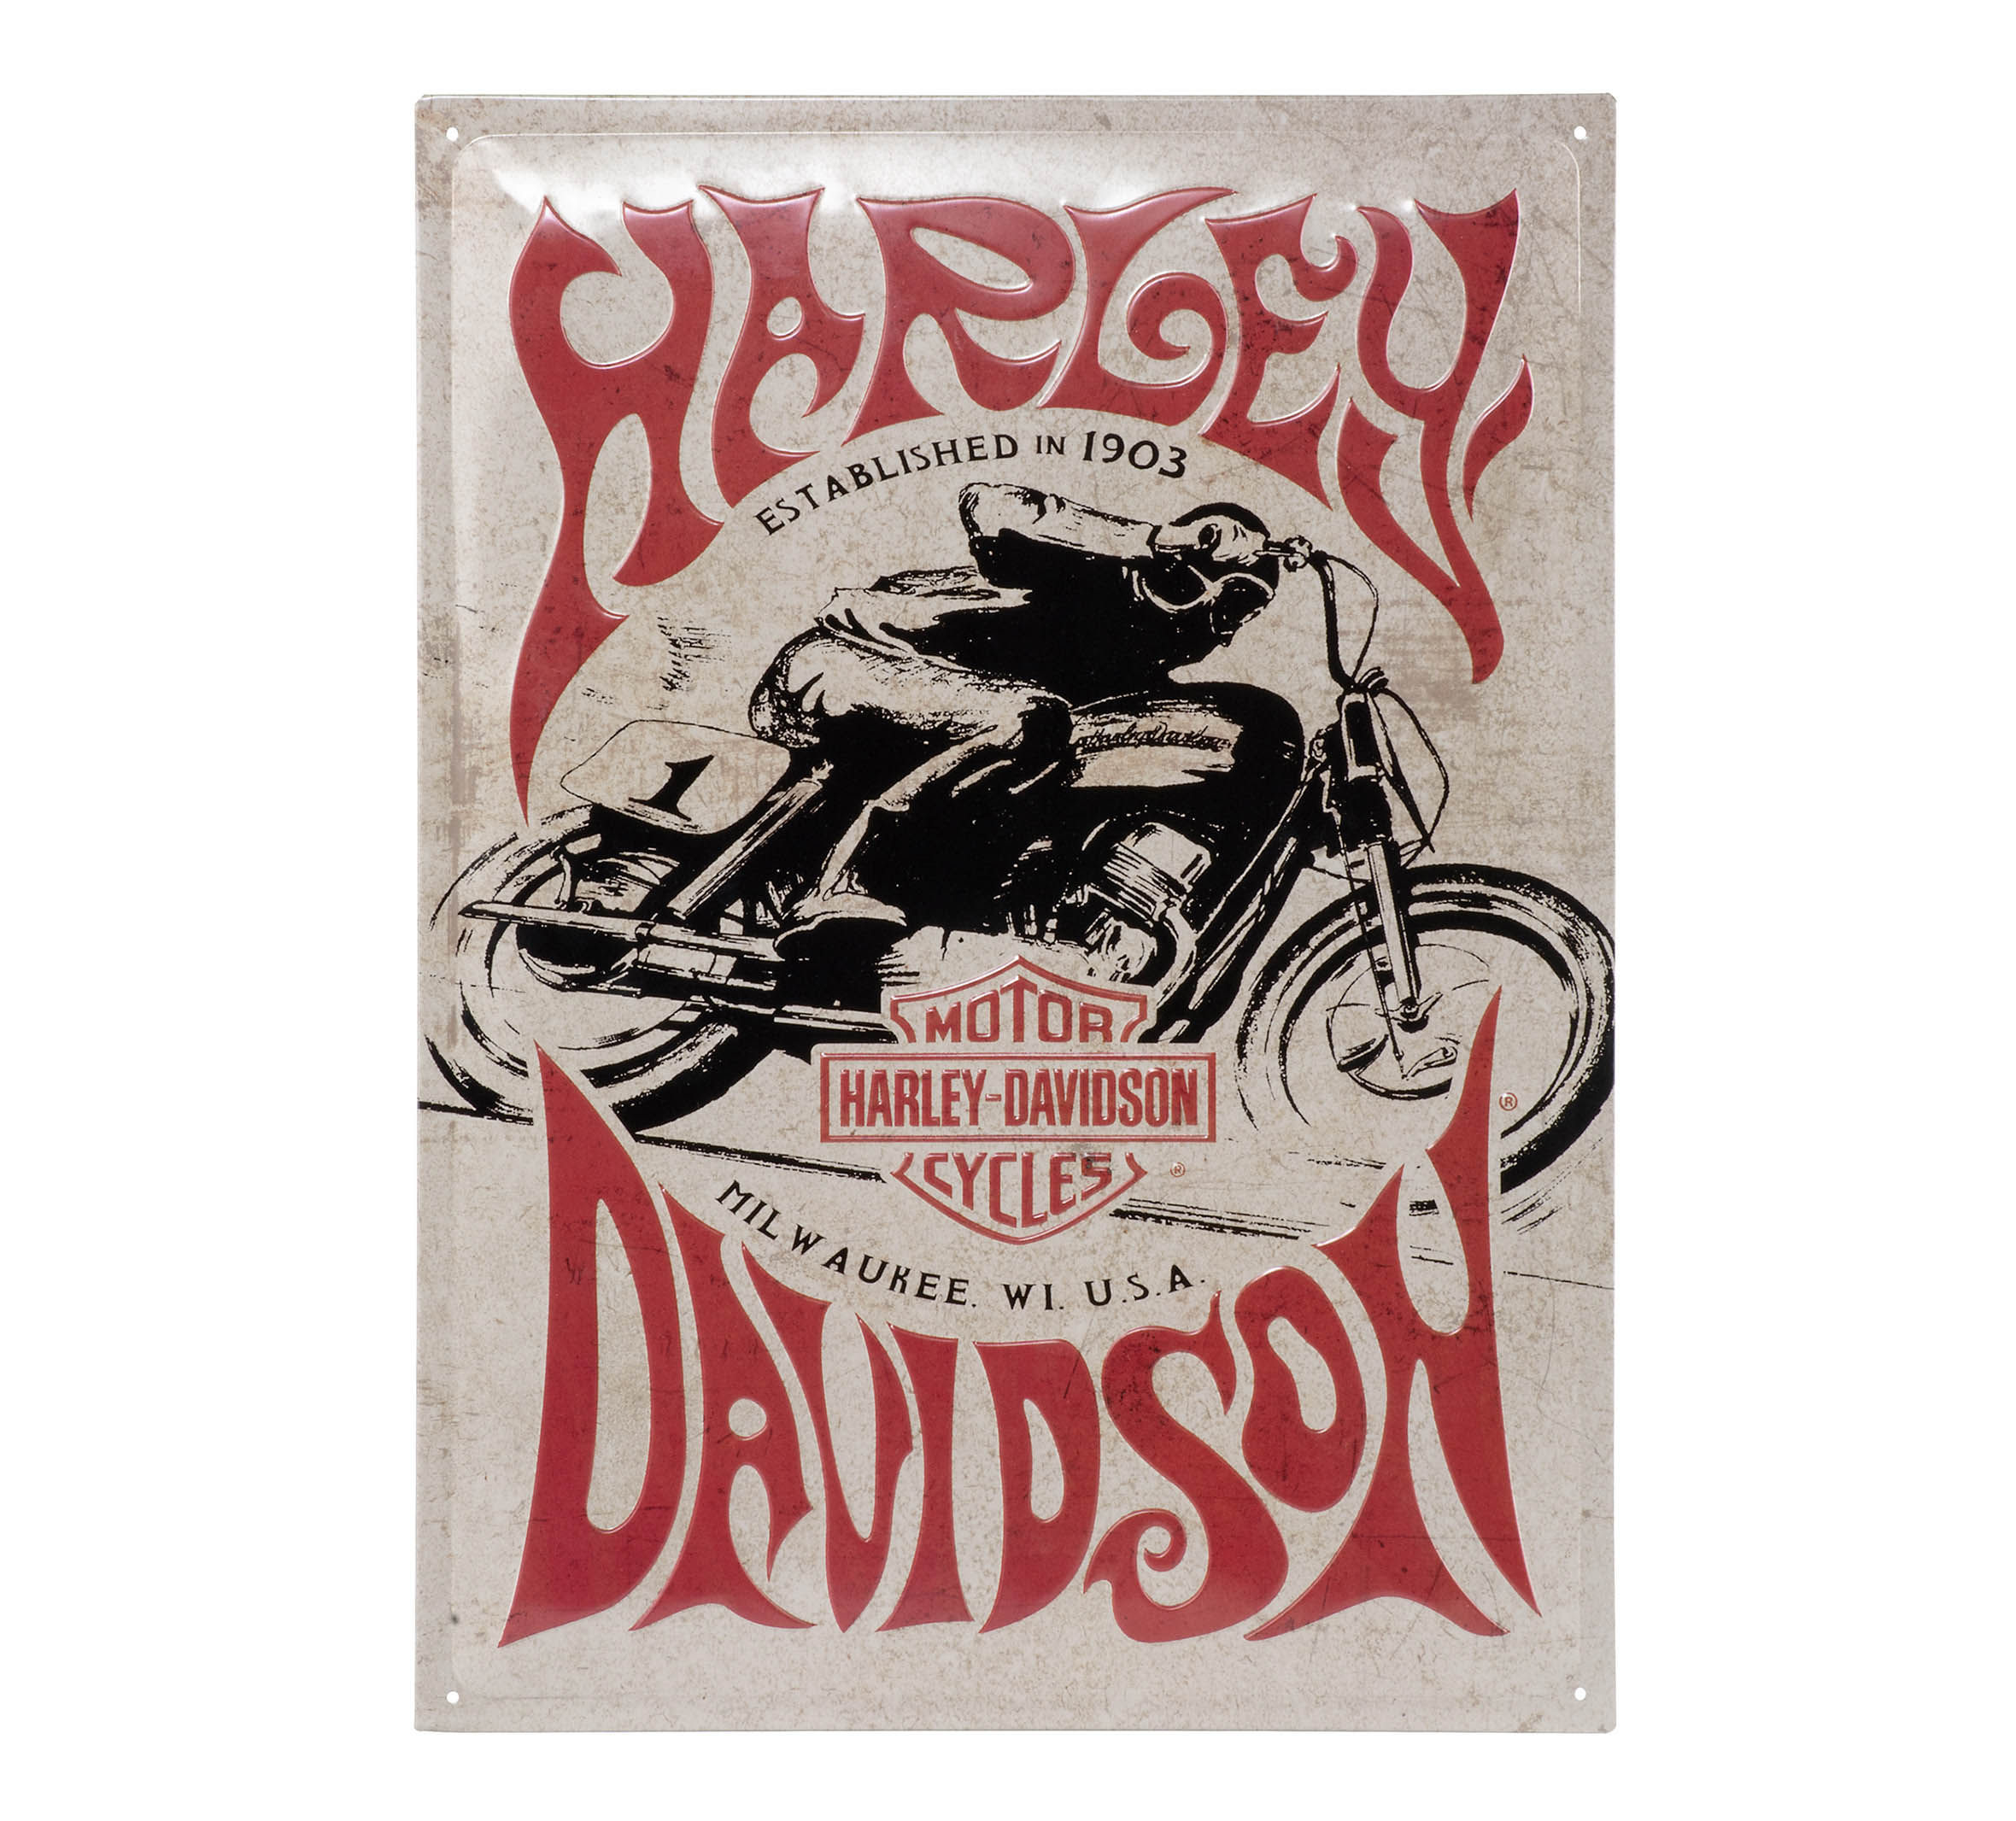 Harley-Davidson® Open Bar & Shield Leather Journal/Pen Set, Black